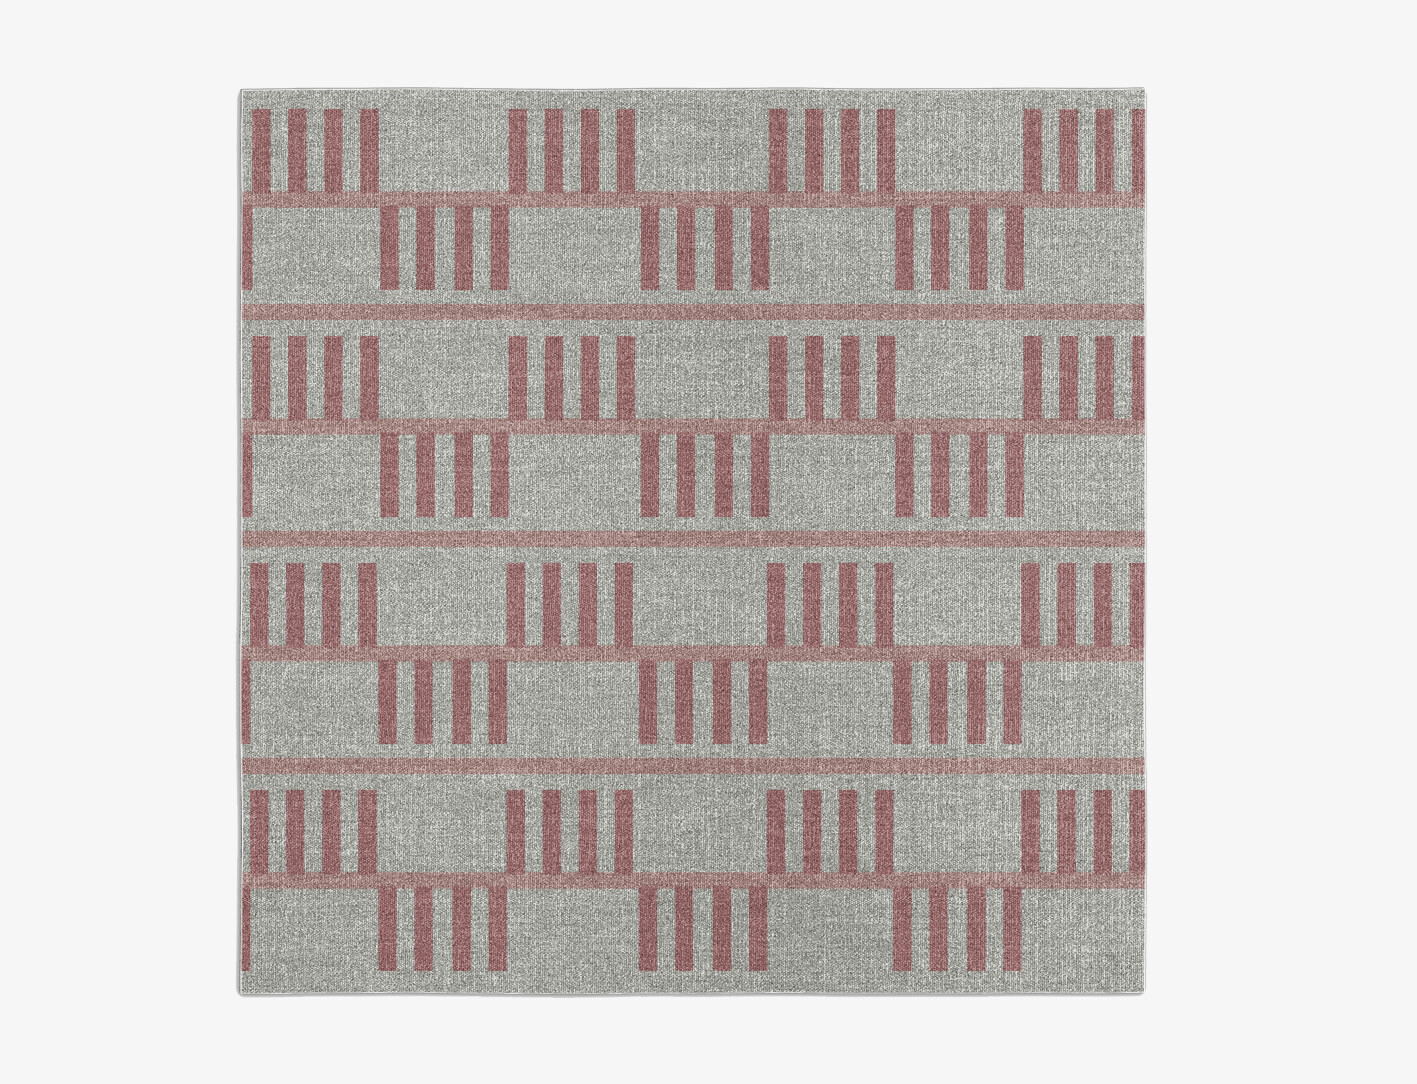 Klaue Geometric Square Flatweave New Zealand Wool Custom Rug by Rug Artisan